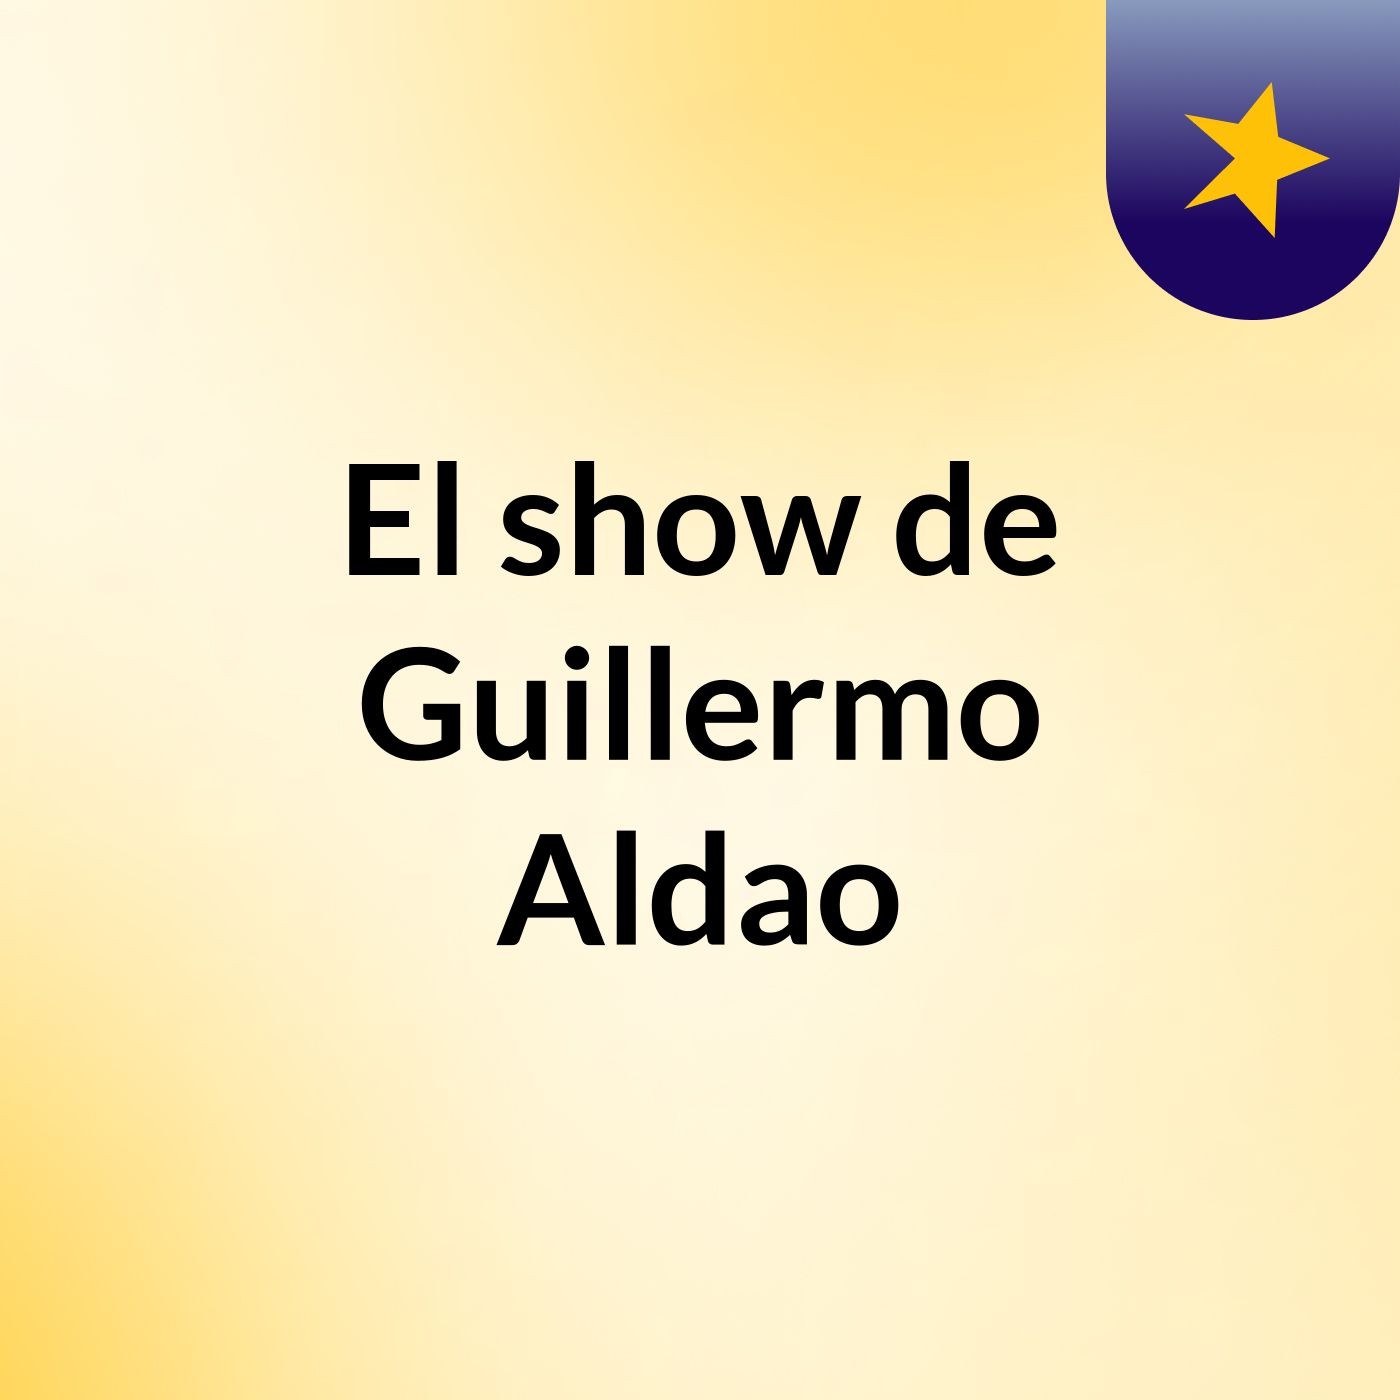 El show de Guillermo Aldao